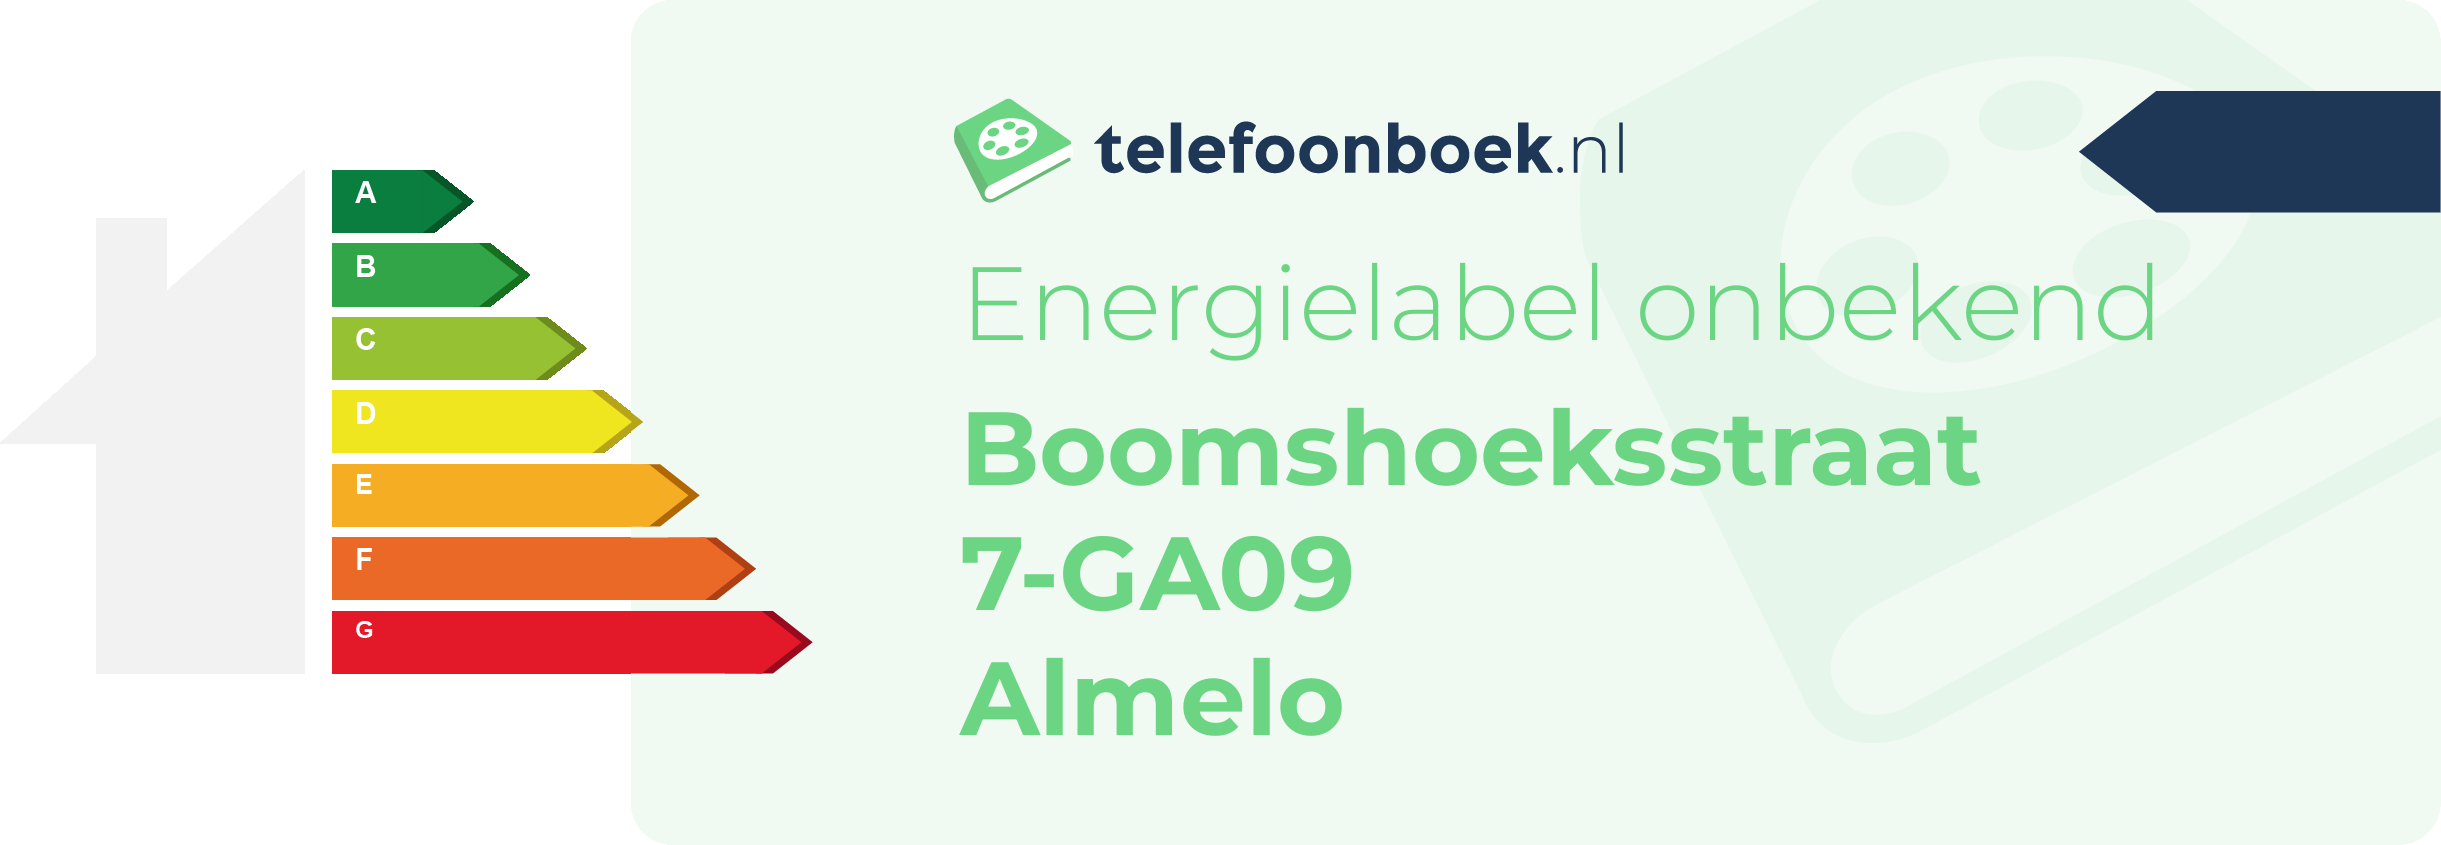 Energielabel Boomshoeksstraat 7-GA09 Almelo